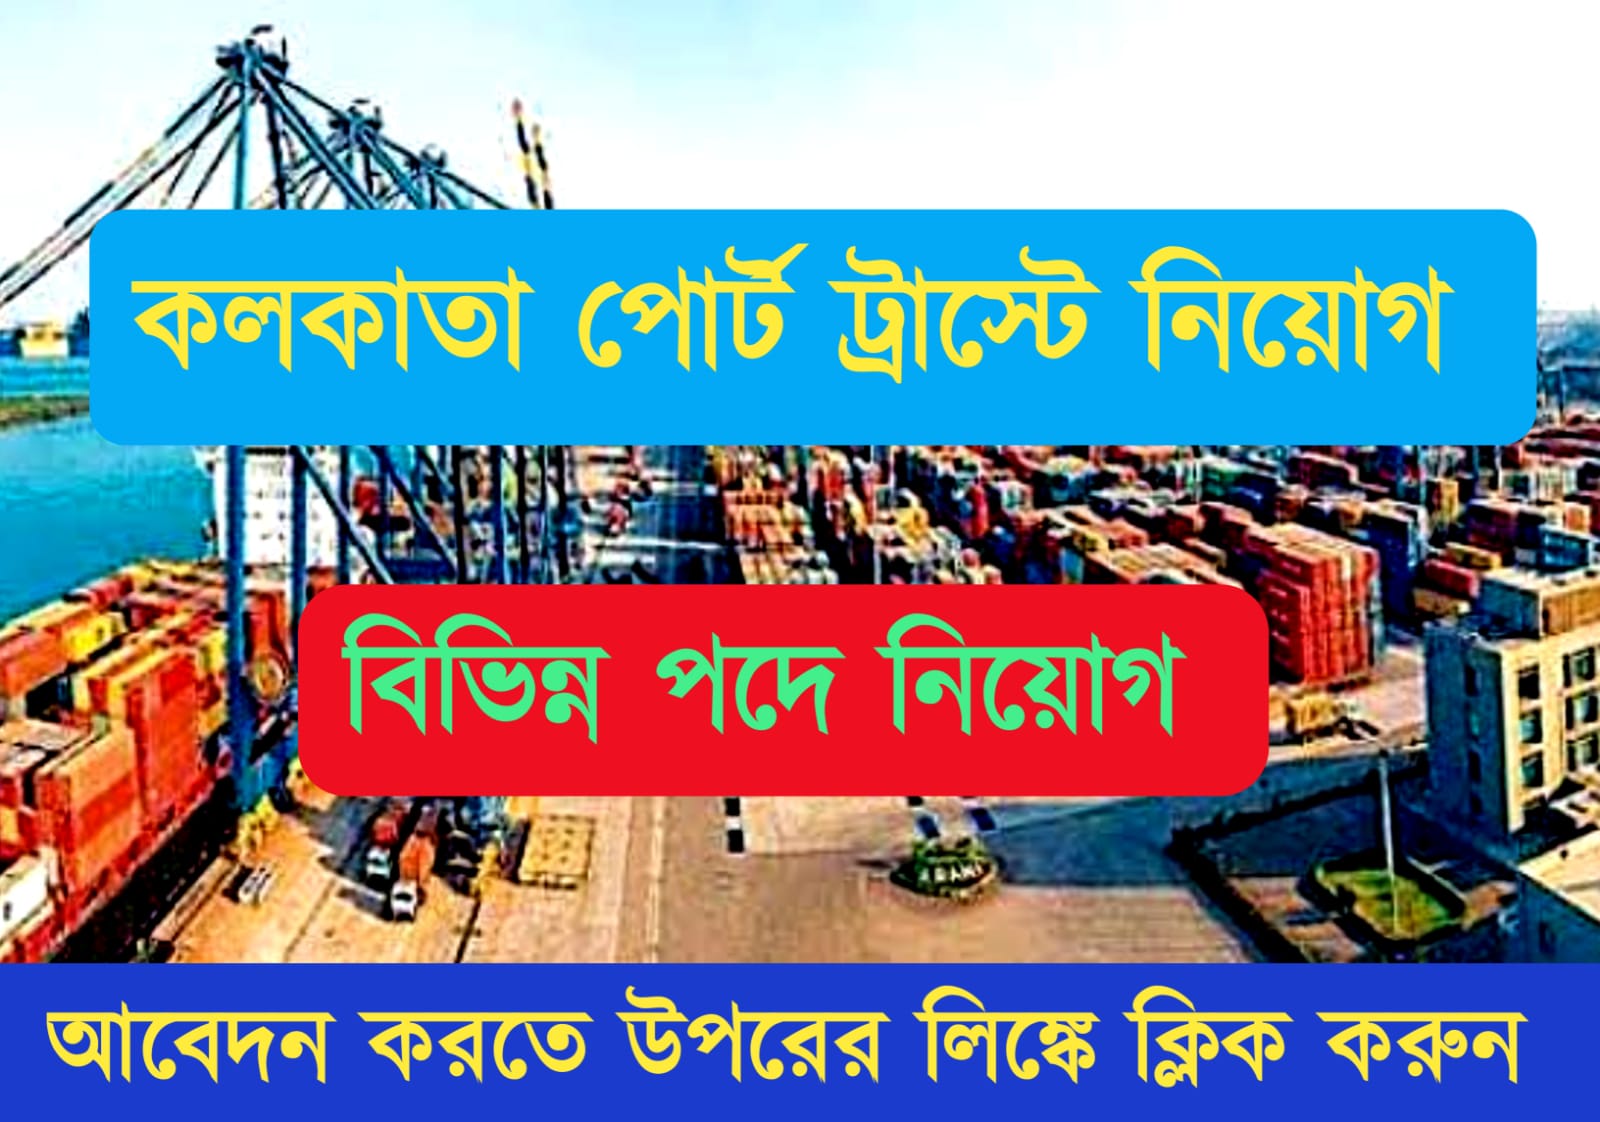 Kolkata Port Trust Recruitment 2022